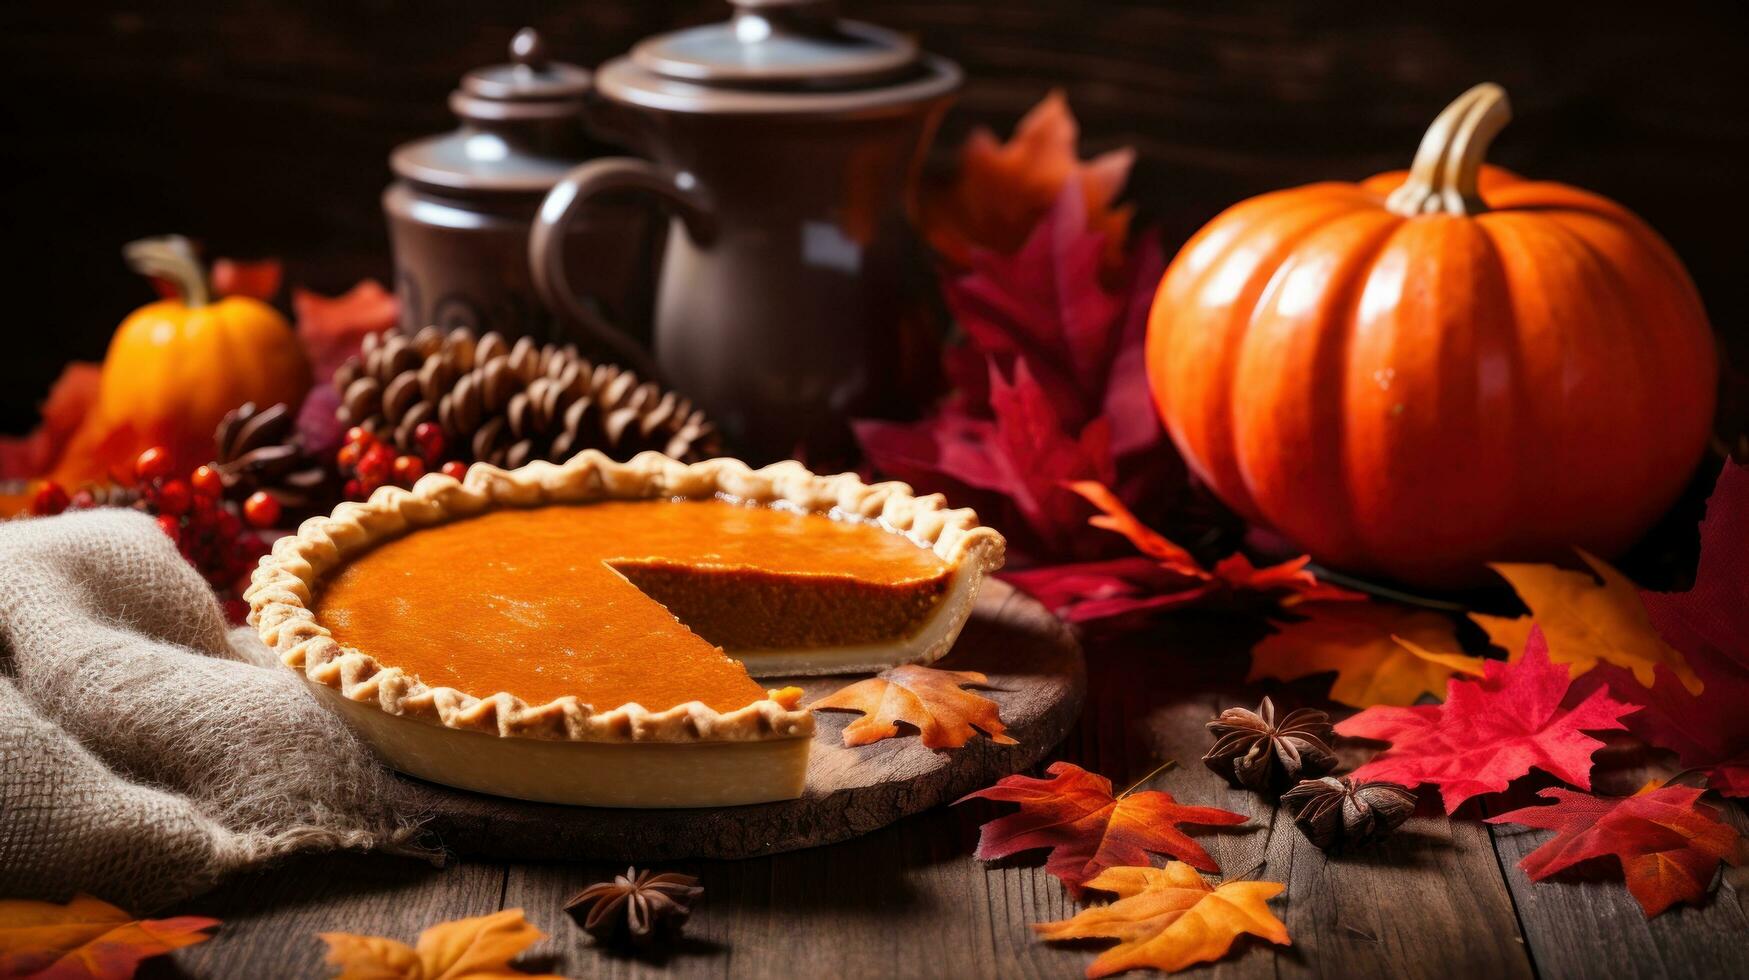 Autumn background with pumpkin pie photo